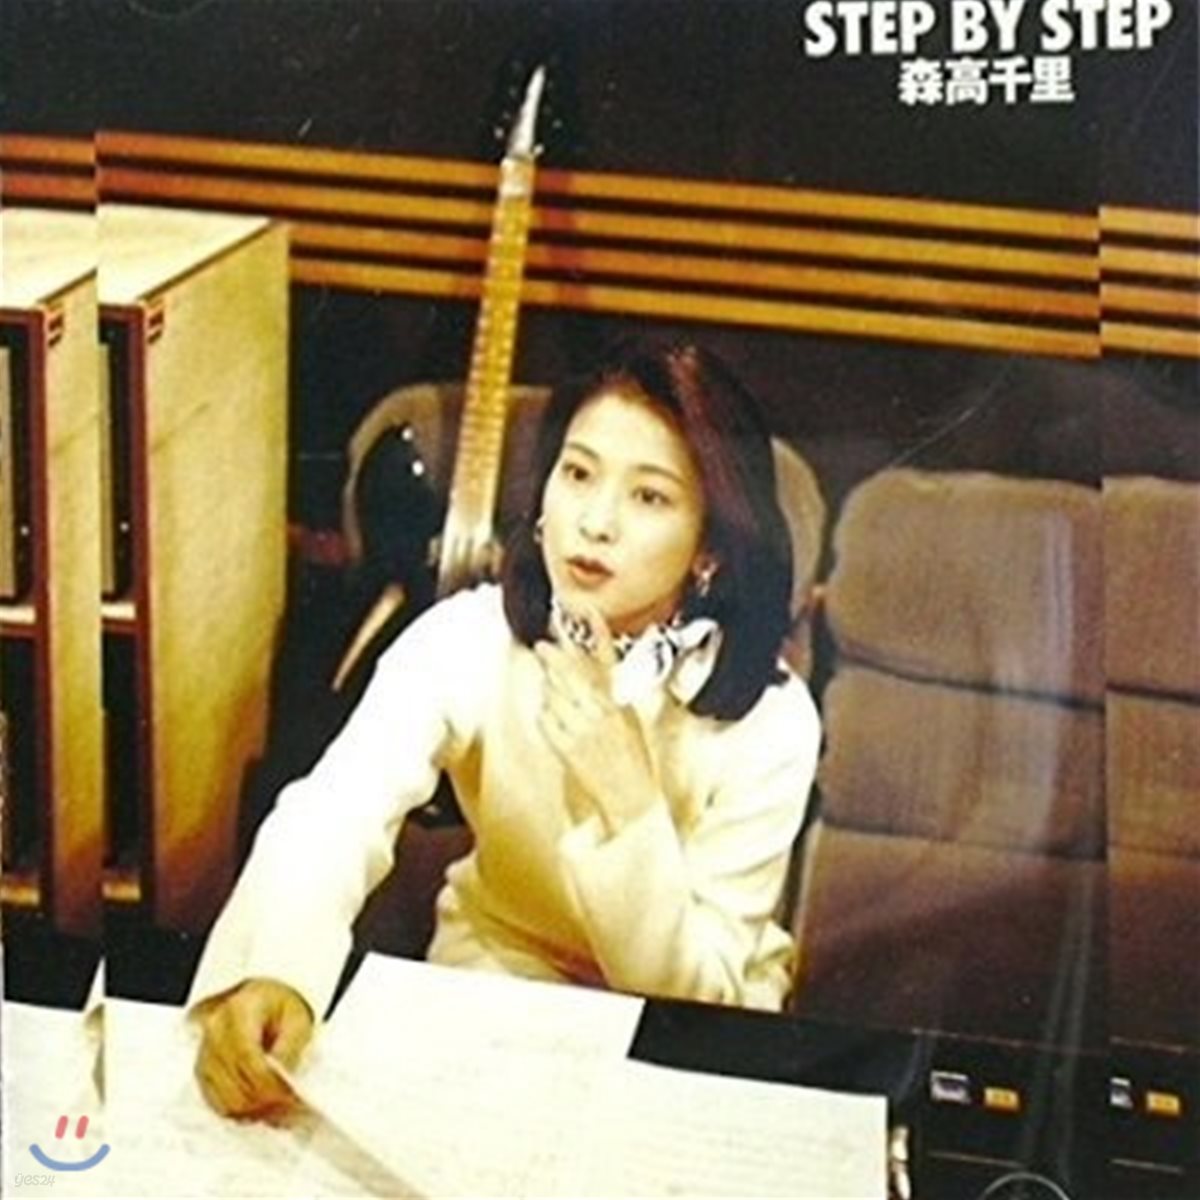 [중고] Moritaka chisato (森高千里) / Step By Step (일본반/epca7002)